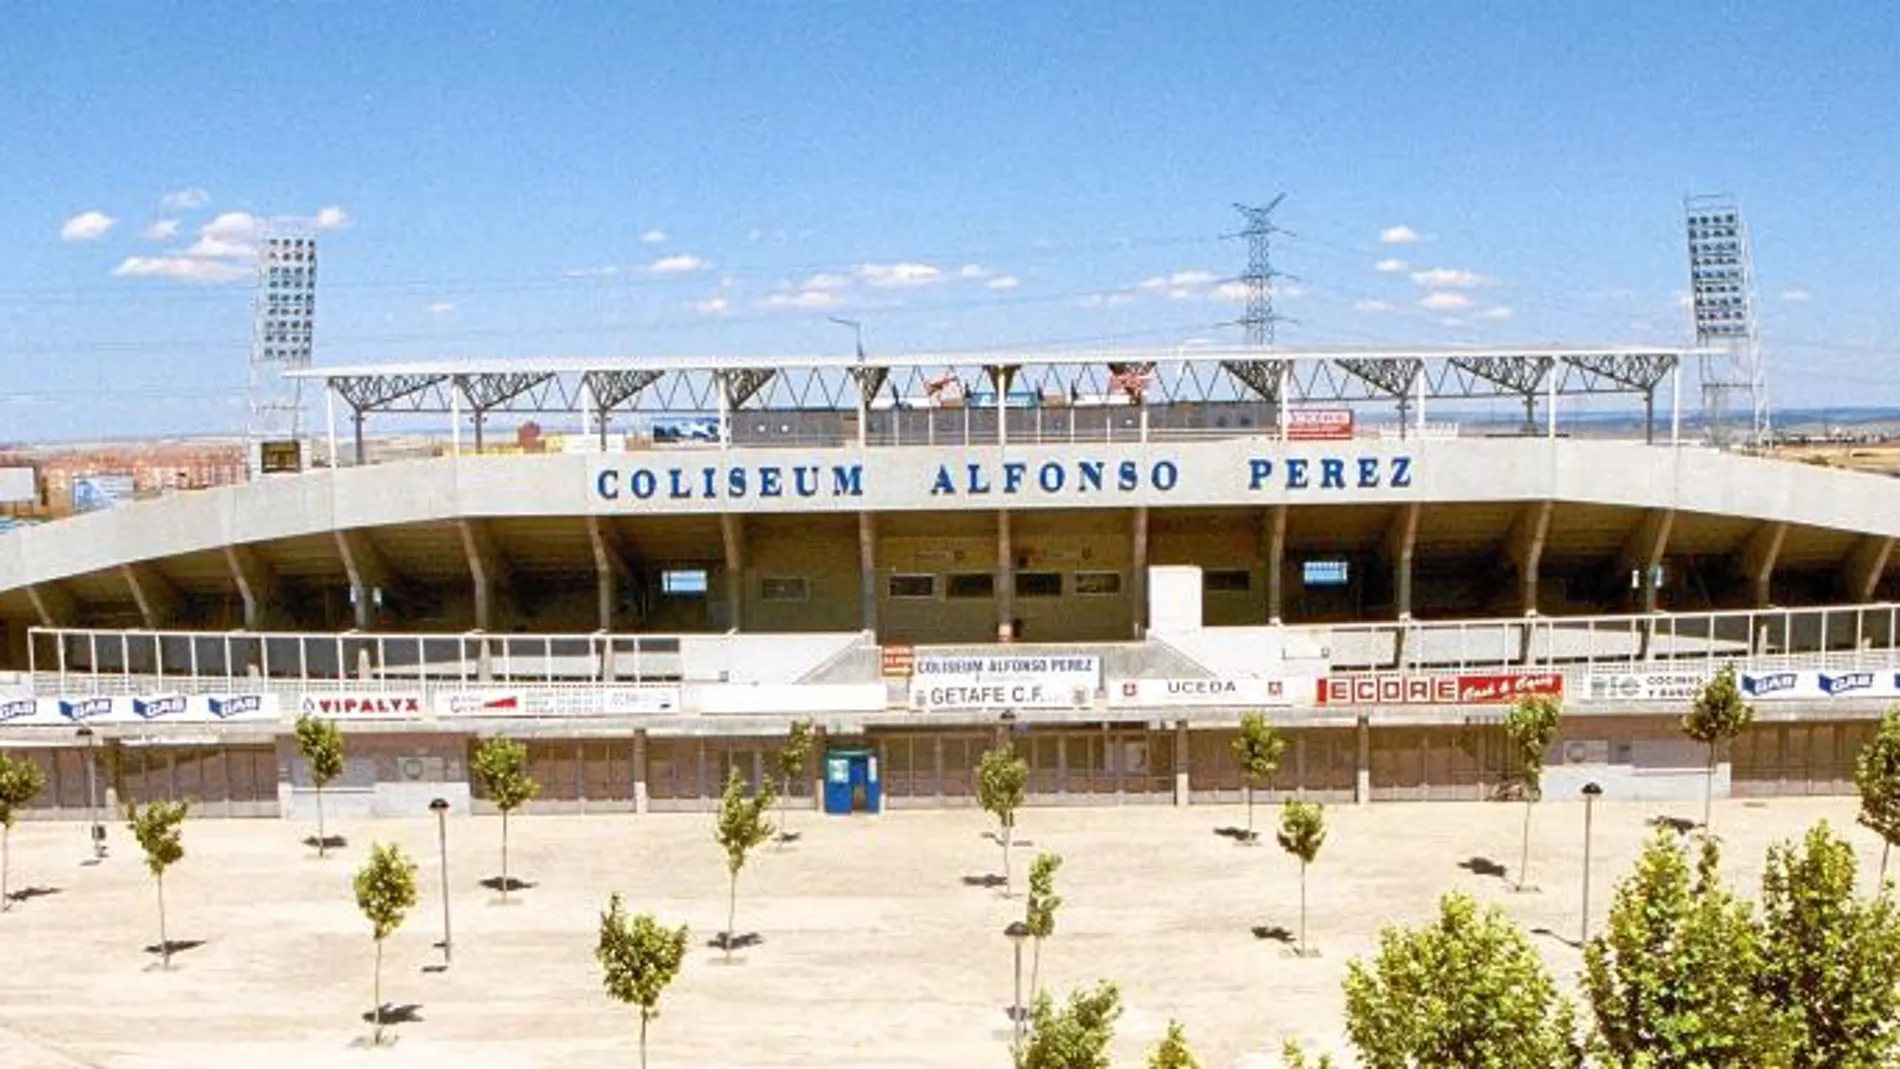 El Coliseum Alfonso Pérez y la ciudad deportiva en los que juega y entrena al Getafe CF son de titularidad municipal